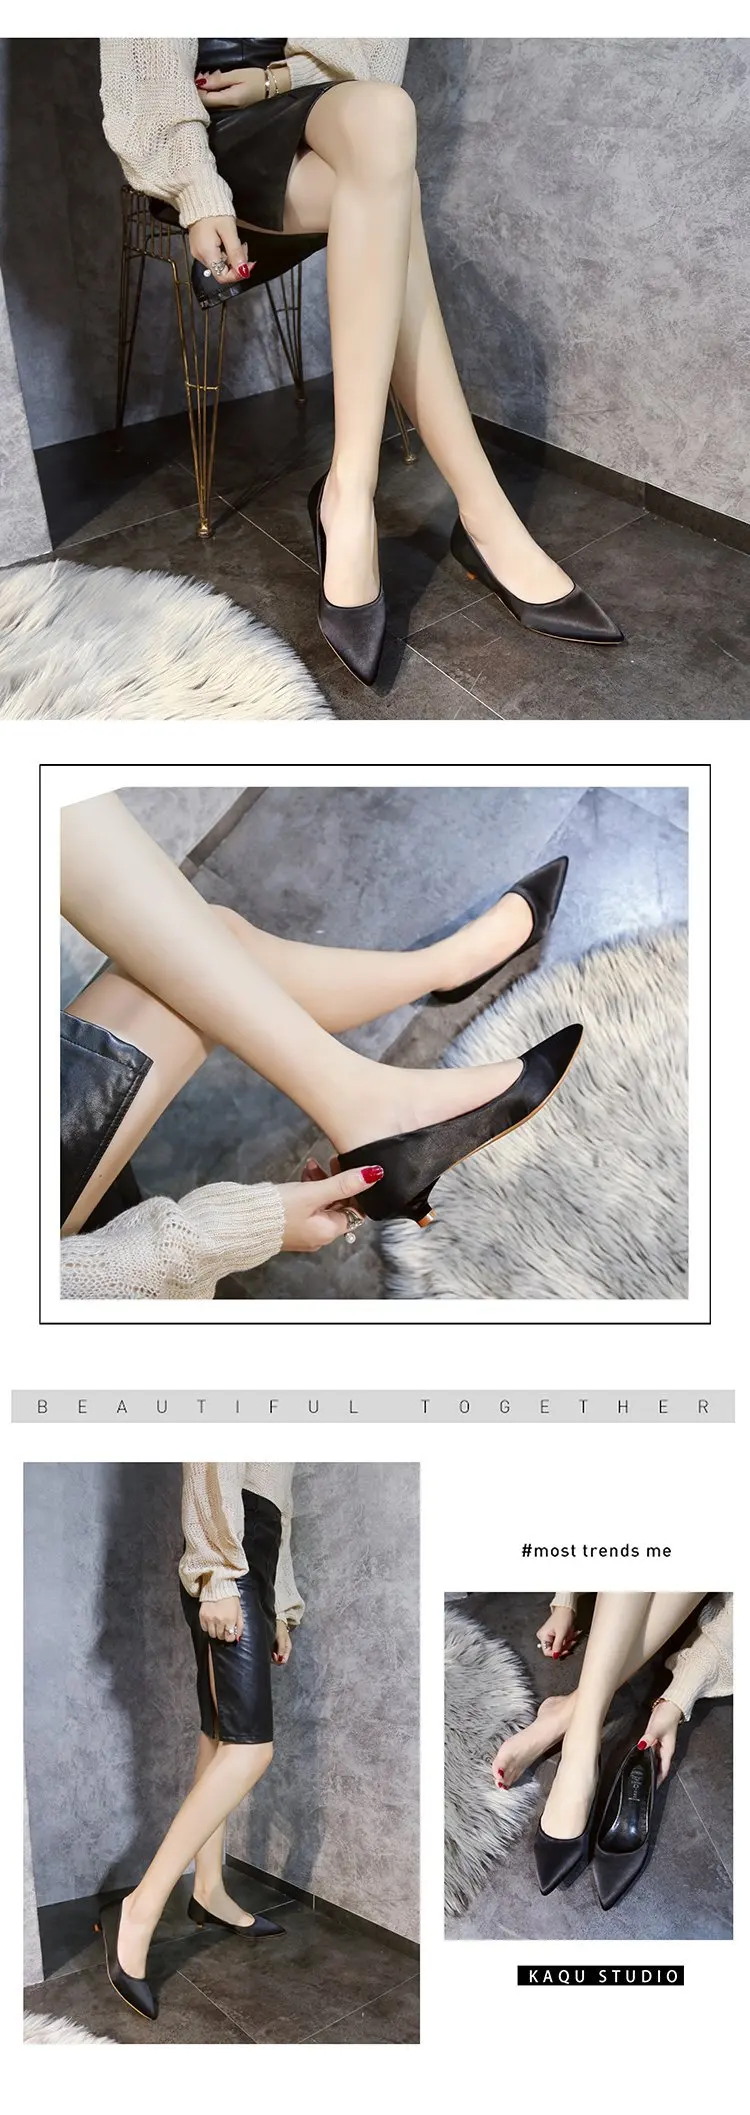 Xiaying Smile/Новинка года; Остроконечные Женские туфли на высоком каблуке с закрытым каблуком 3 см; туфли для профессиональной работы